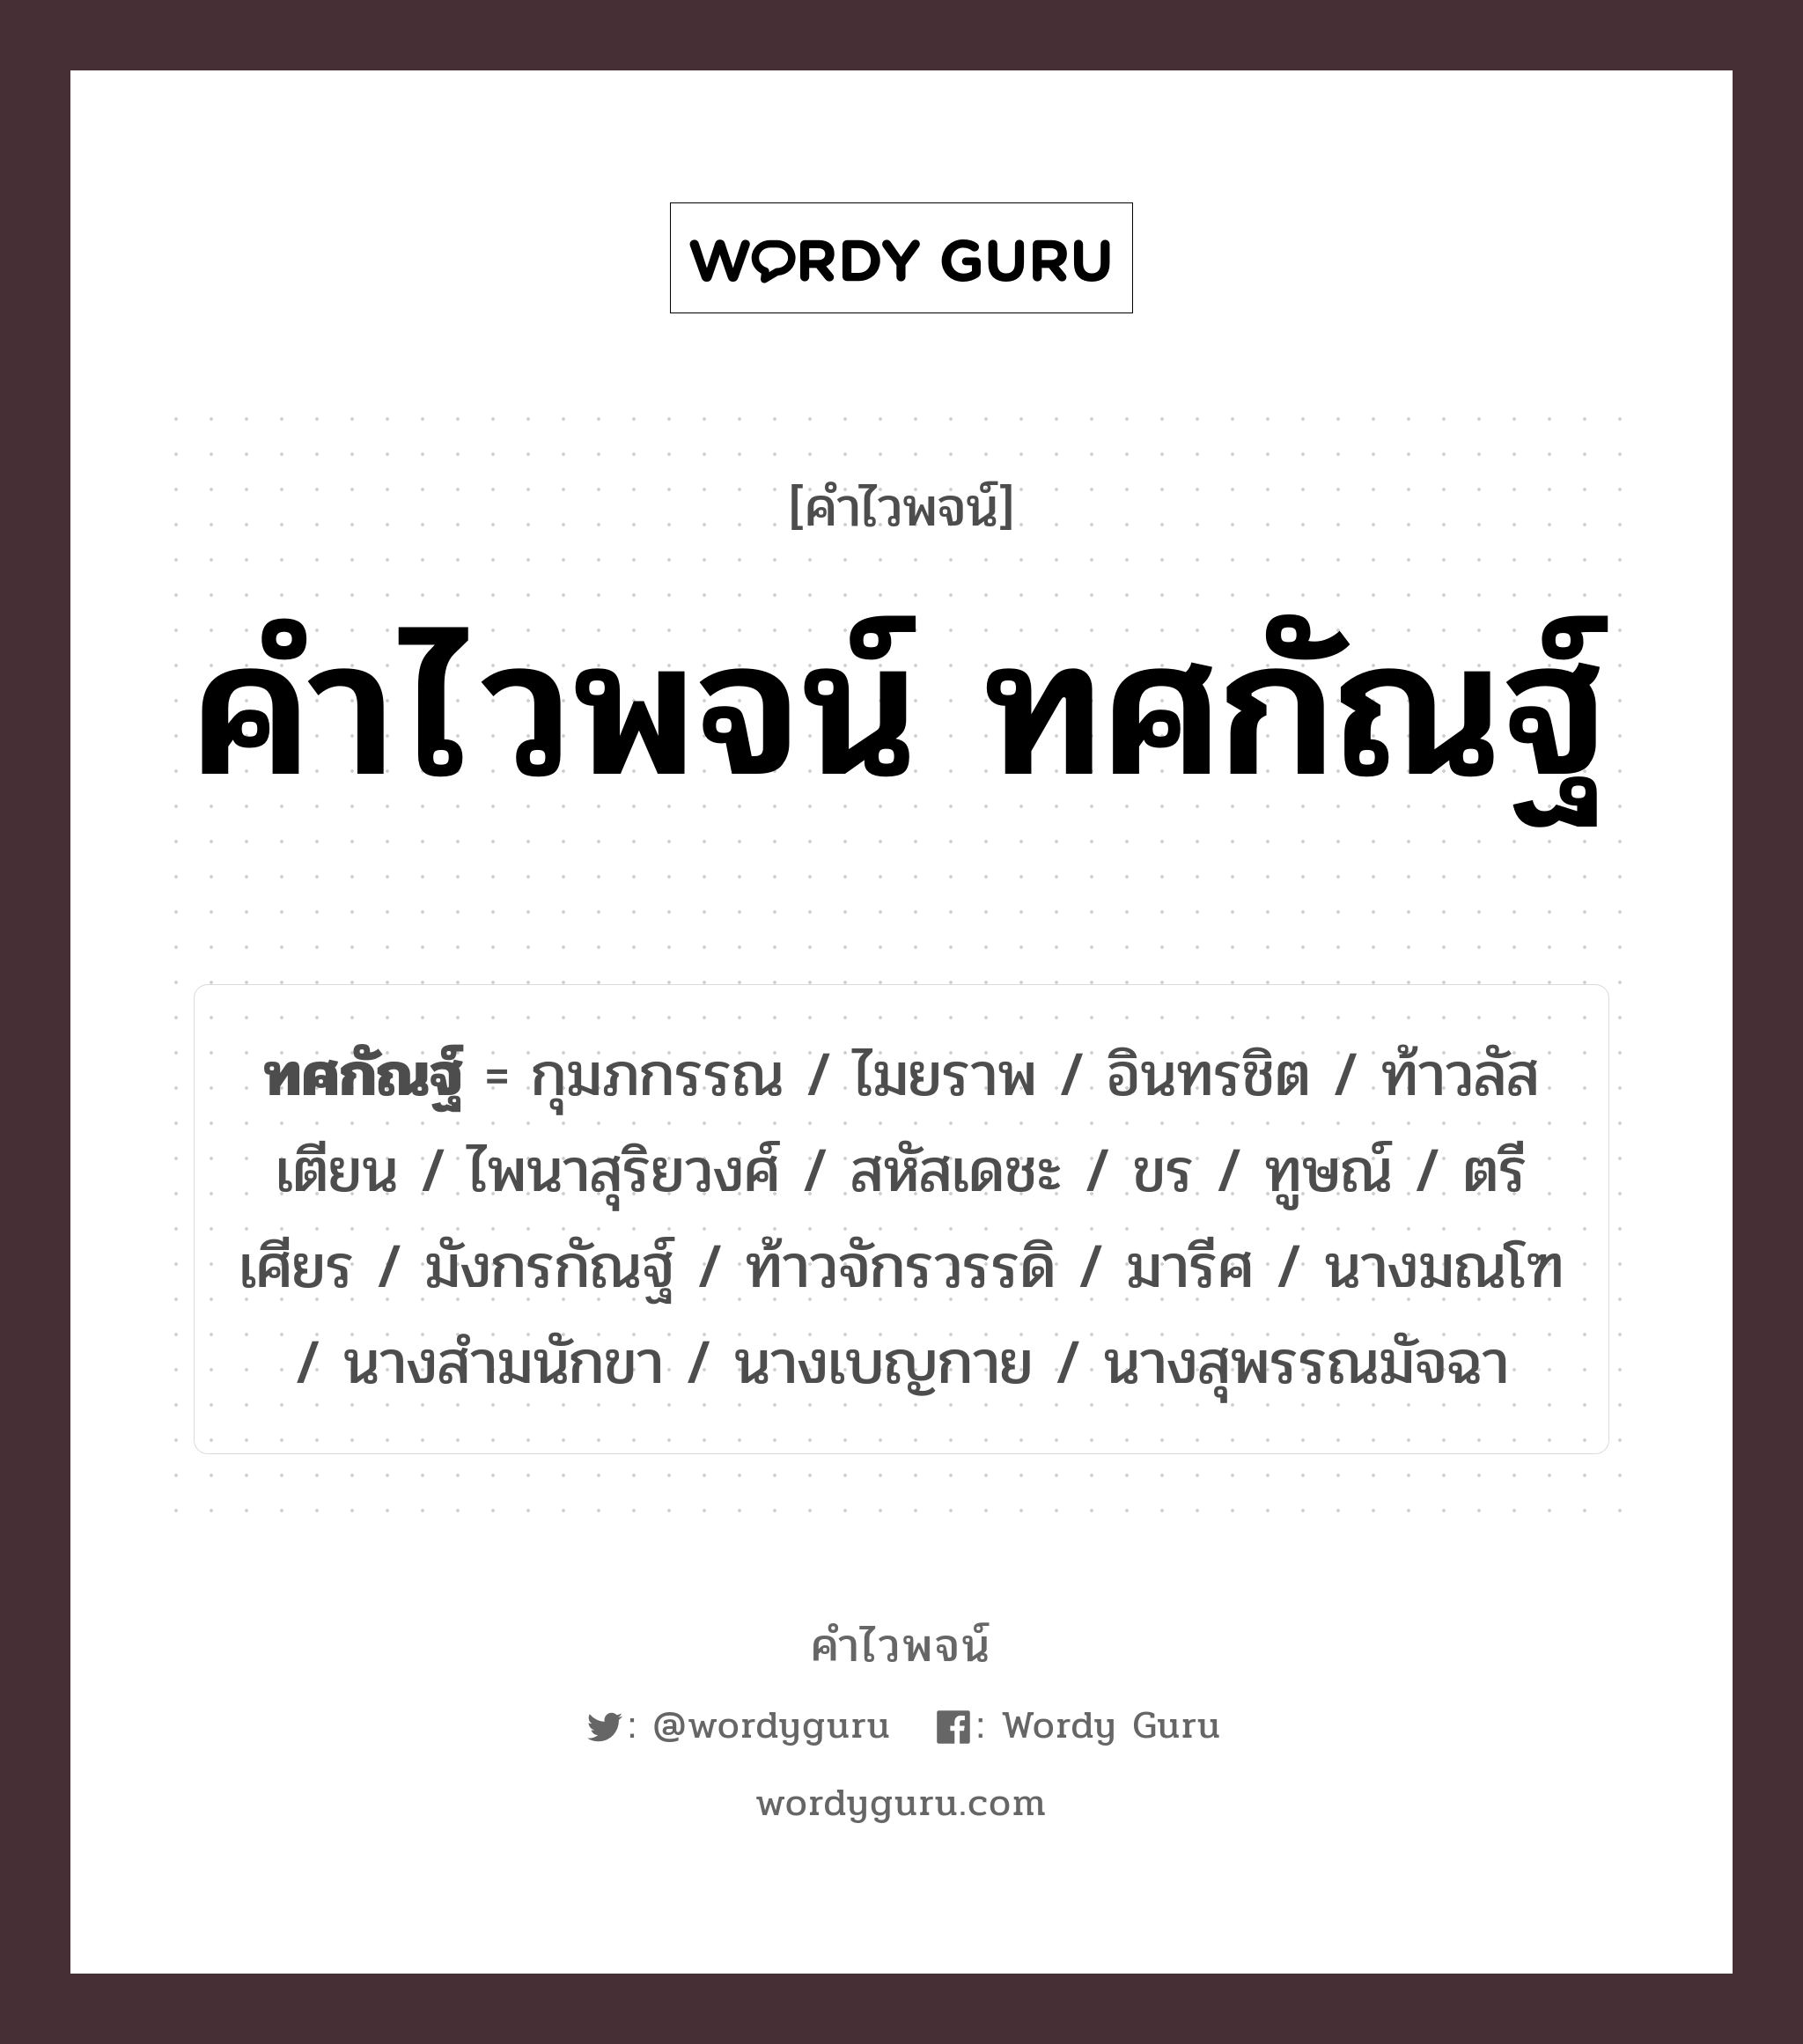 คำไวพจน์ ทศกัณฐ์ คืออะไร?, คำในภาษาไทย มังกรกัณฐ์ กลุ่มคำไวพจน์ คำไวพจน์กลุ่ม วรรณคดี/เทพนิยาย หมวด คำไวพจน์ ทศกัณฐ์